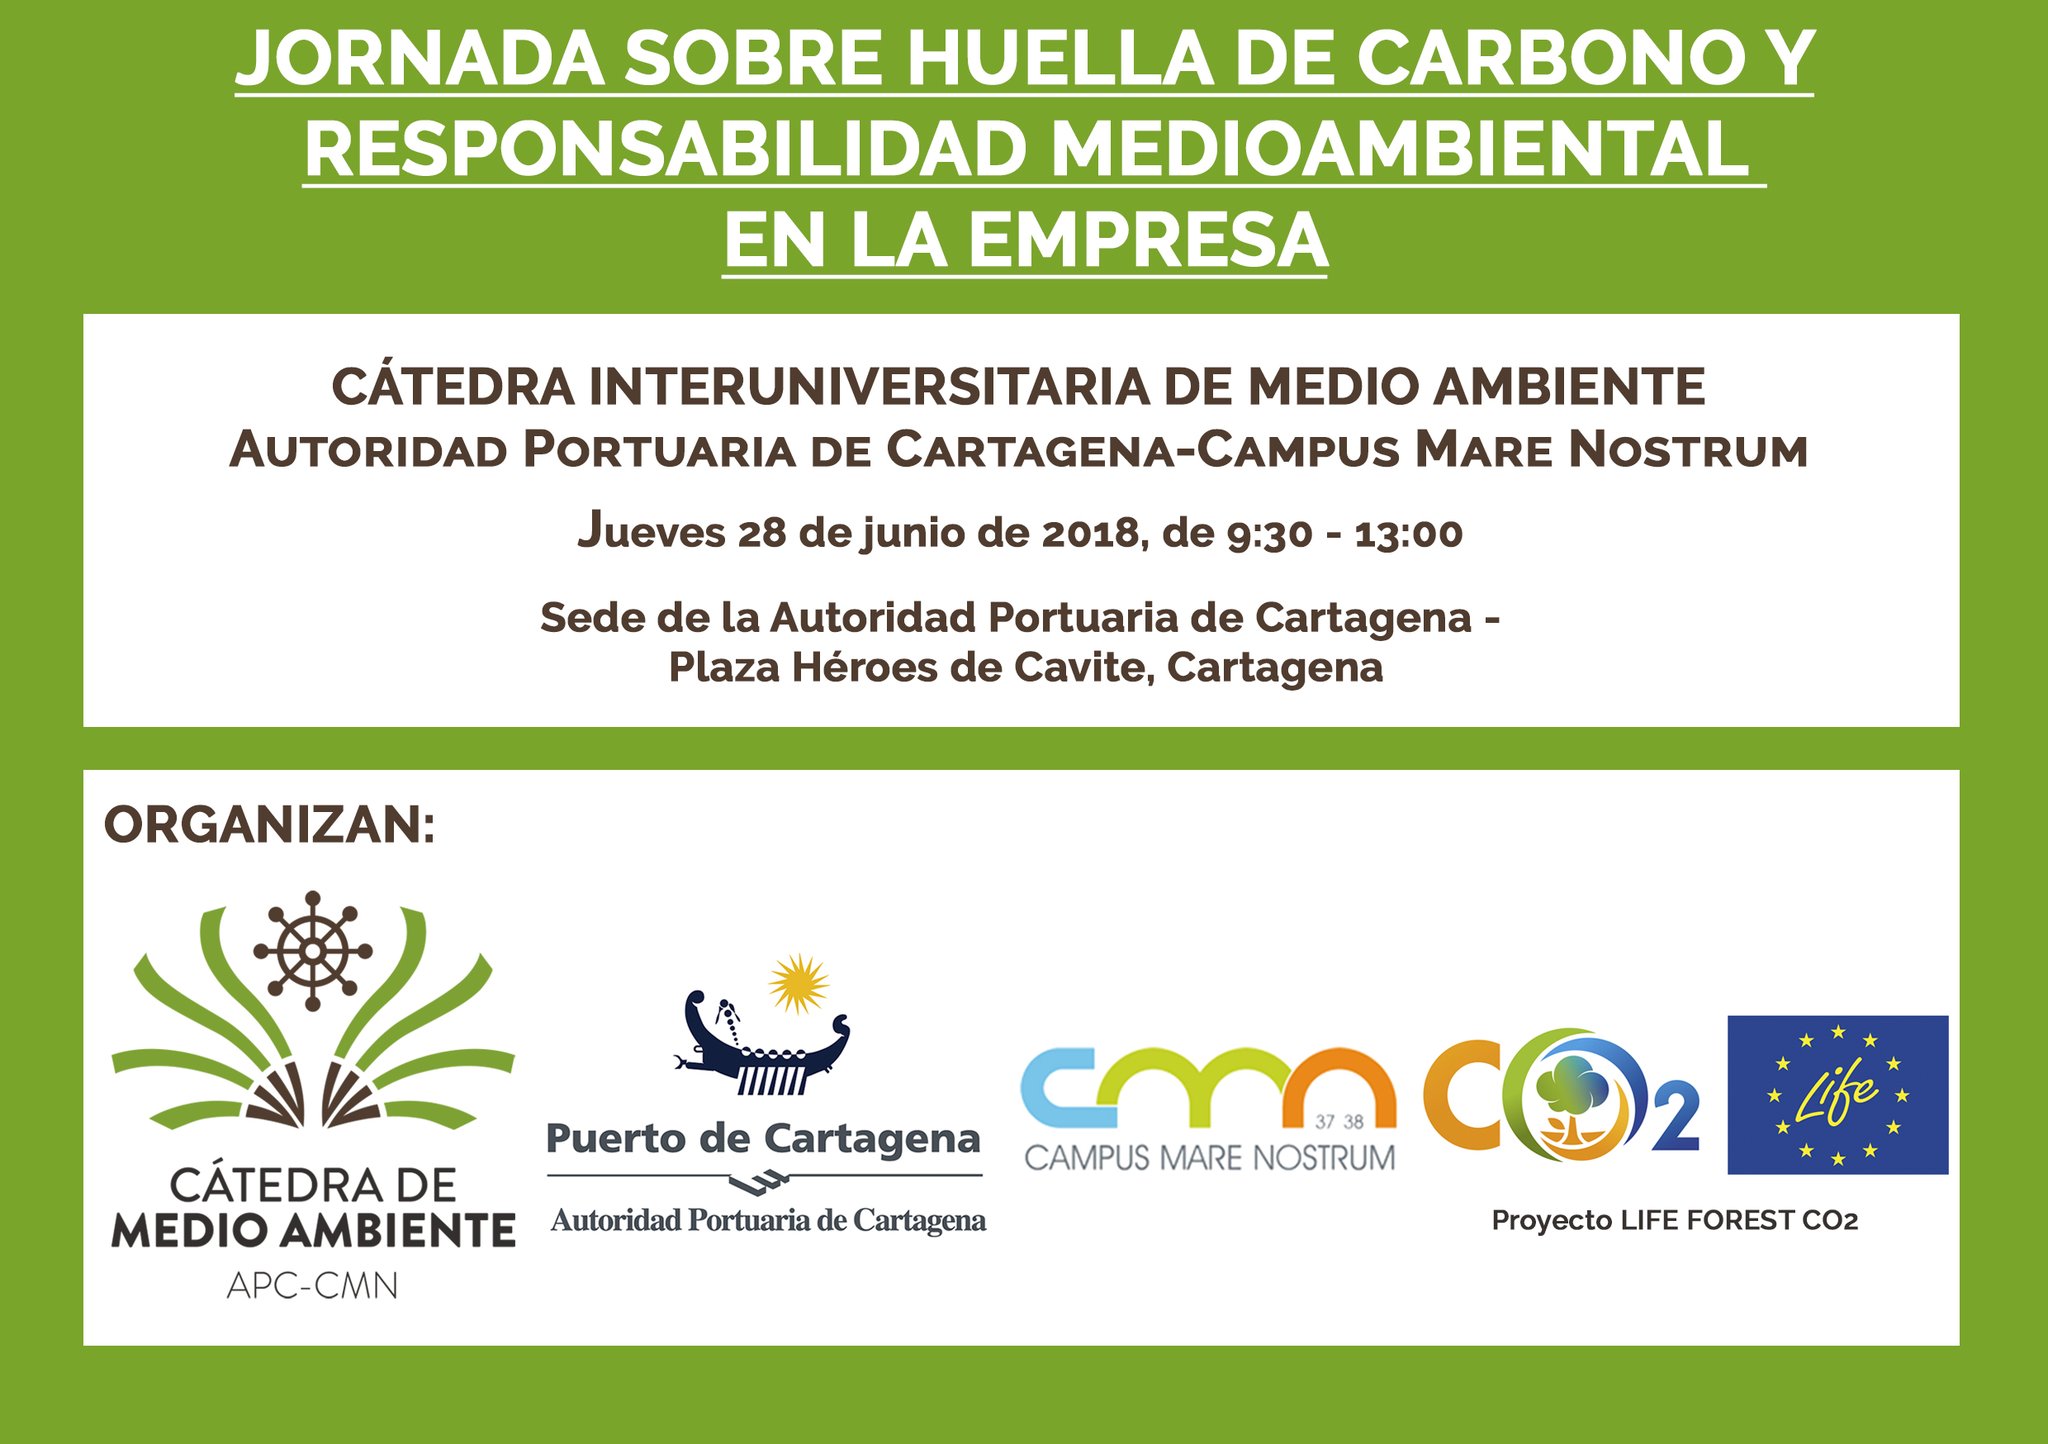 Jornada sobre Huella de Carbono para empresas, con la Cátedra de Medio Ambiente APC-CMN